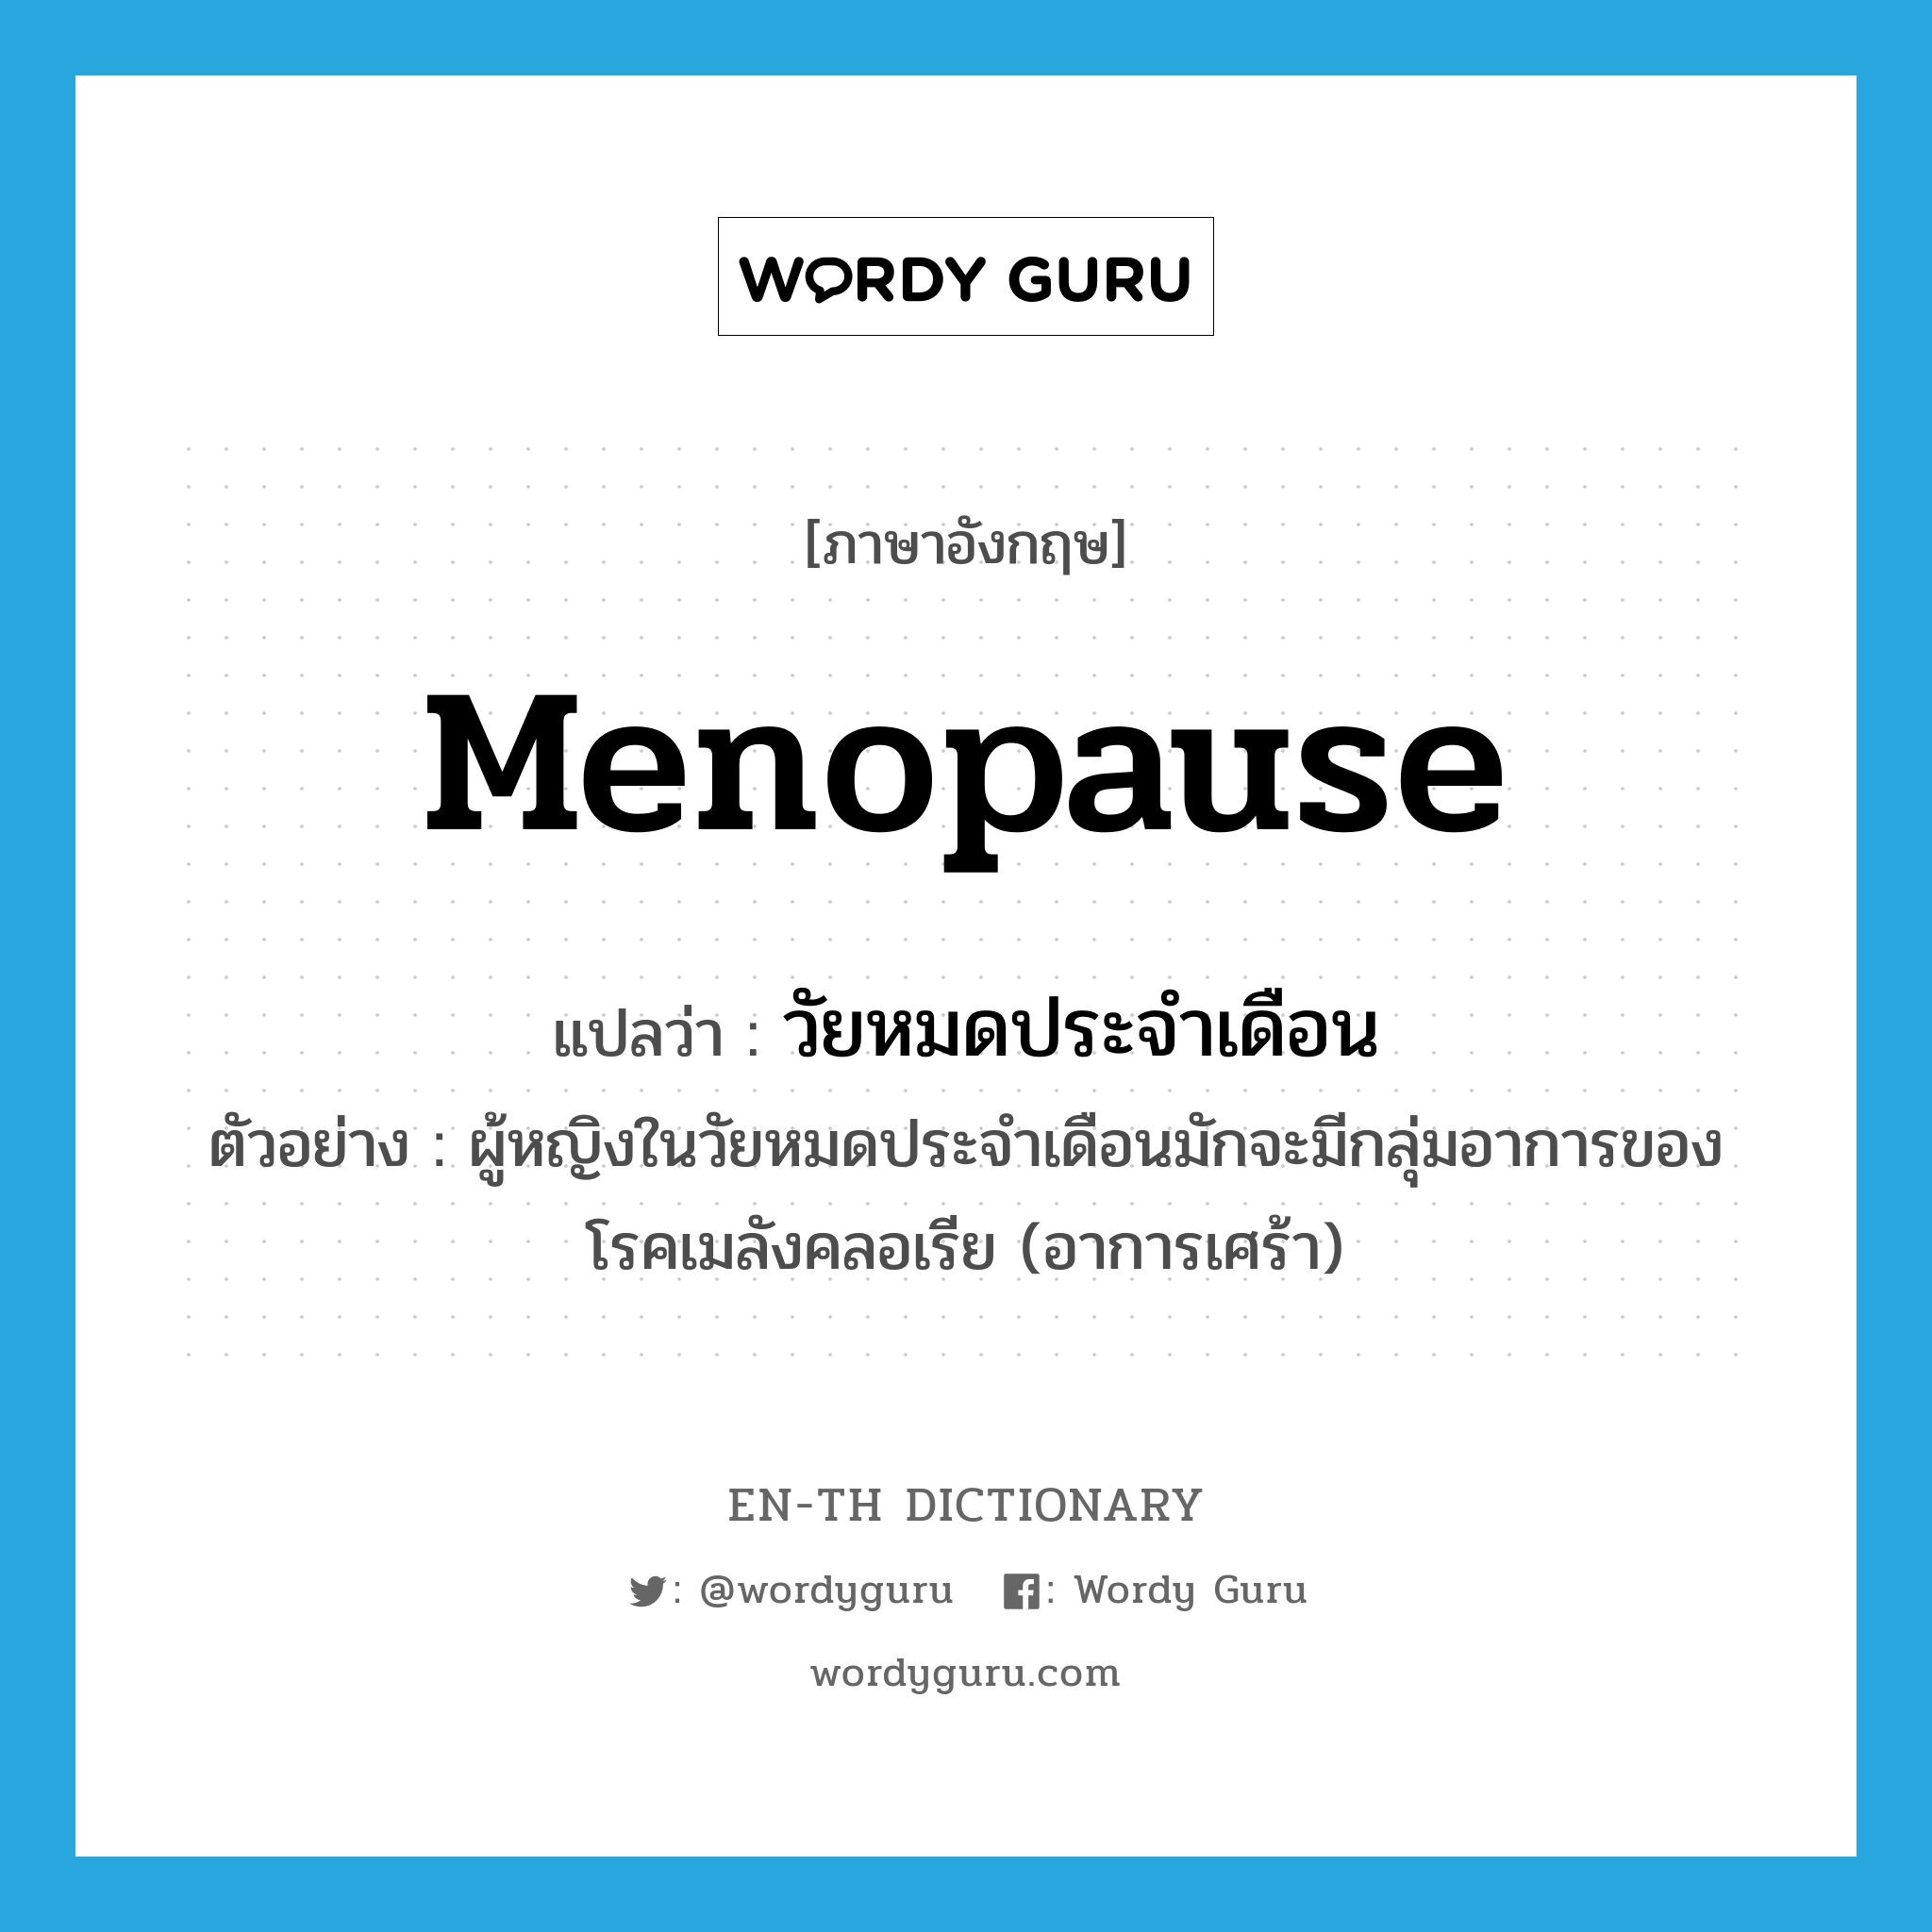 menopause แปลว่า?, คำศัพท์ภาษาอังกฤษ menopause แปลว่า วัยหมดประจำเดือน ประเภท N ตัวอย่าง ผู้หญิงในวัยหมดประจำเดือนมักจะมีกลุ่มอาการของโรคเมลังคลอเรีย (อาการเศร้า) หมวด N